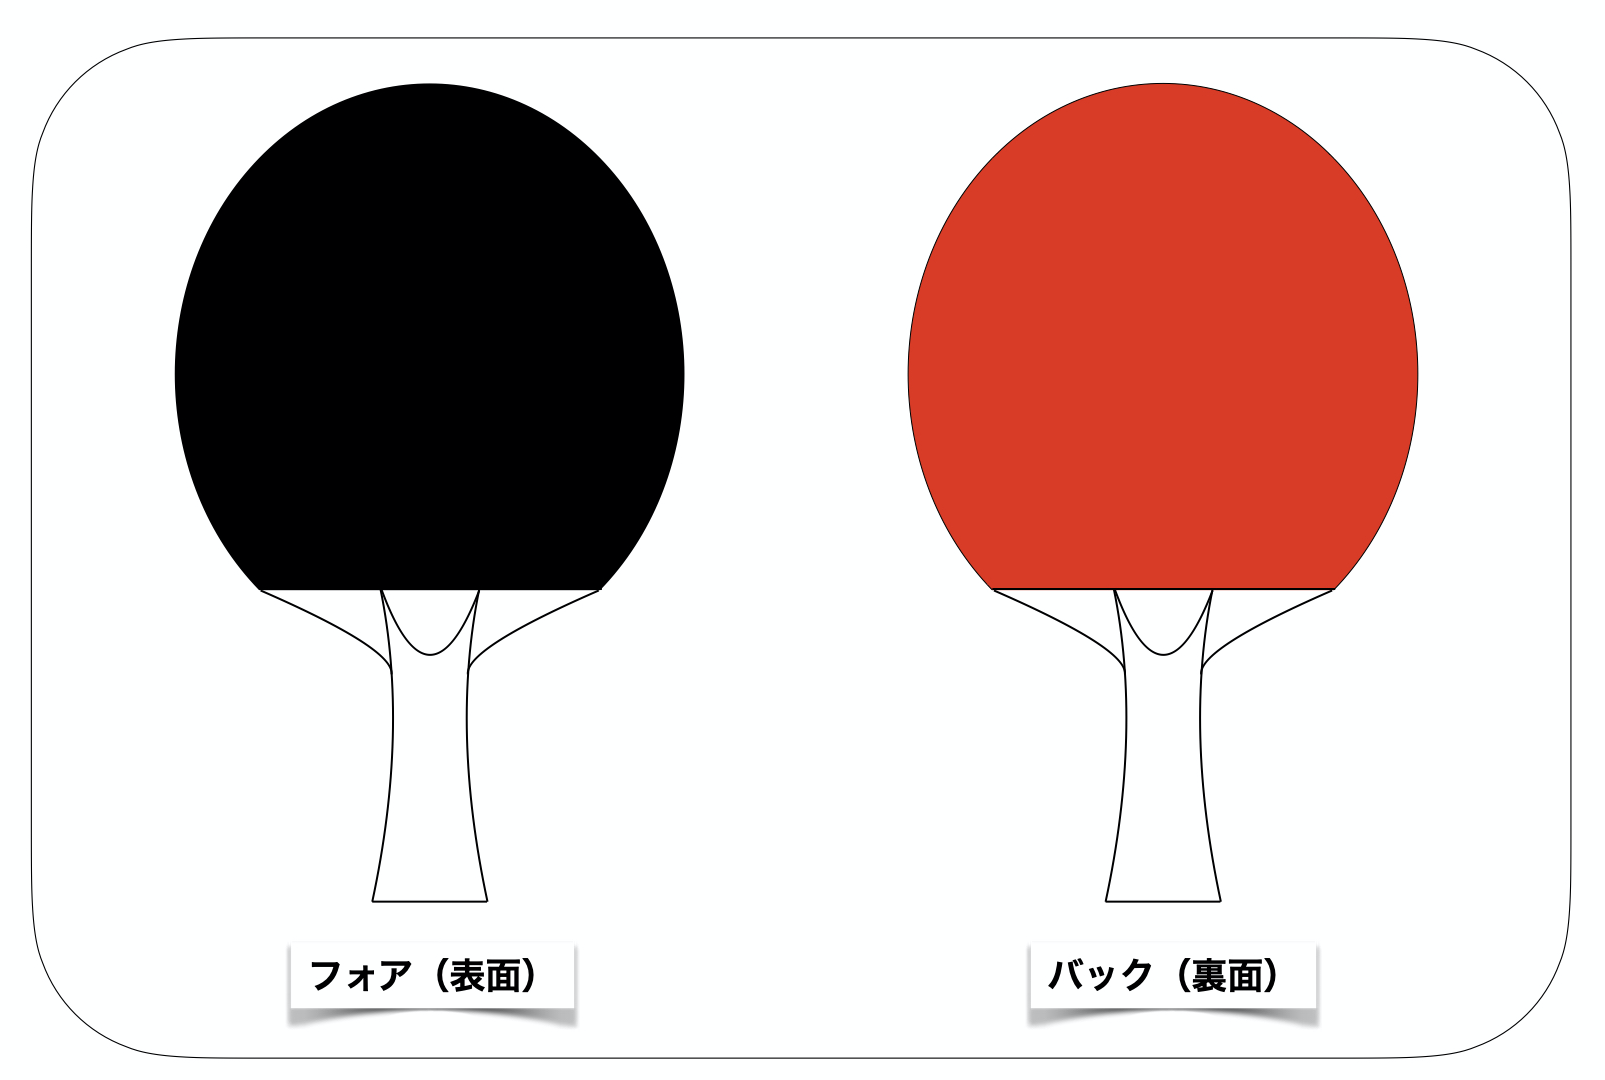 卓球ラケット全種類の特徴・シェークとペンの違いや形を説明 | Me